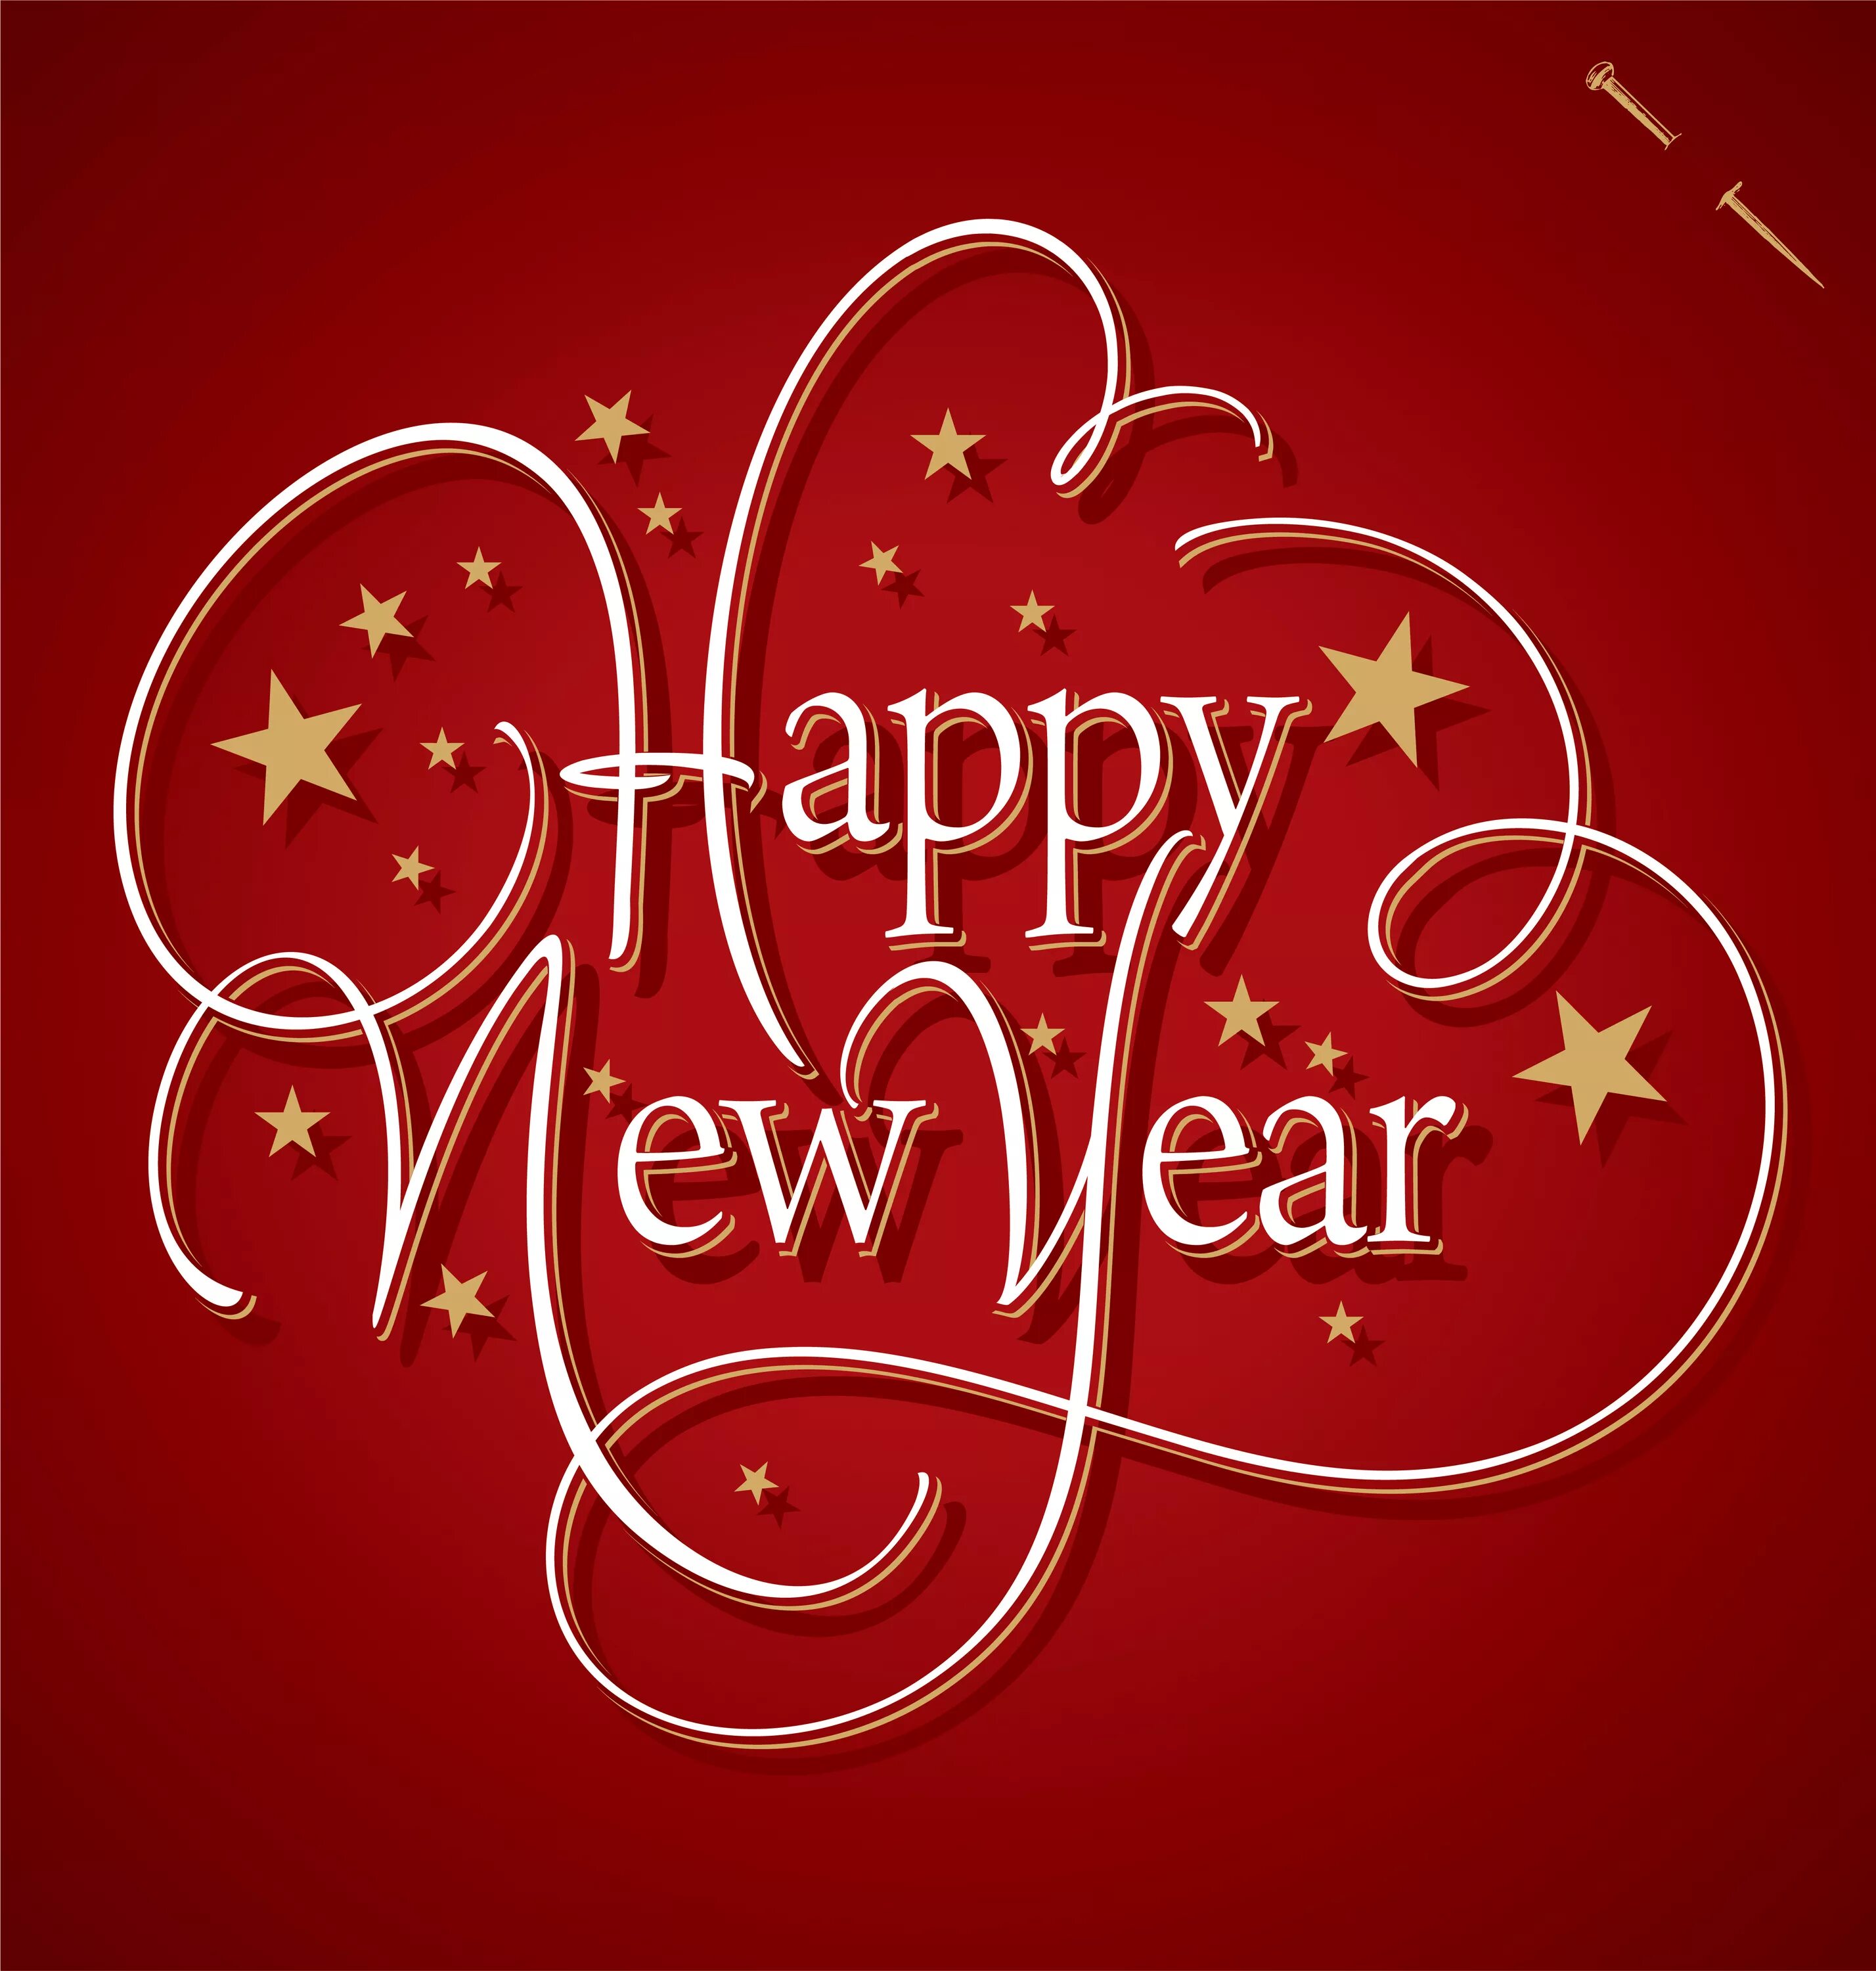 Happy new year be happy. Happy New year. Happy New year картинки. С новым годом на английском. Новогодние надписи.